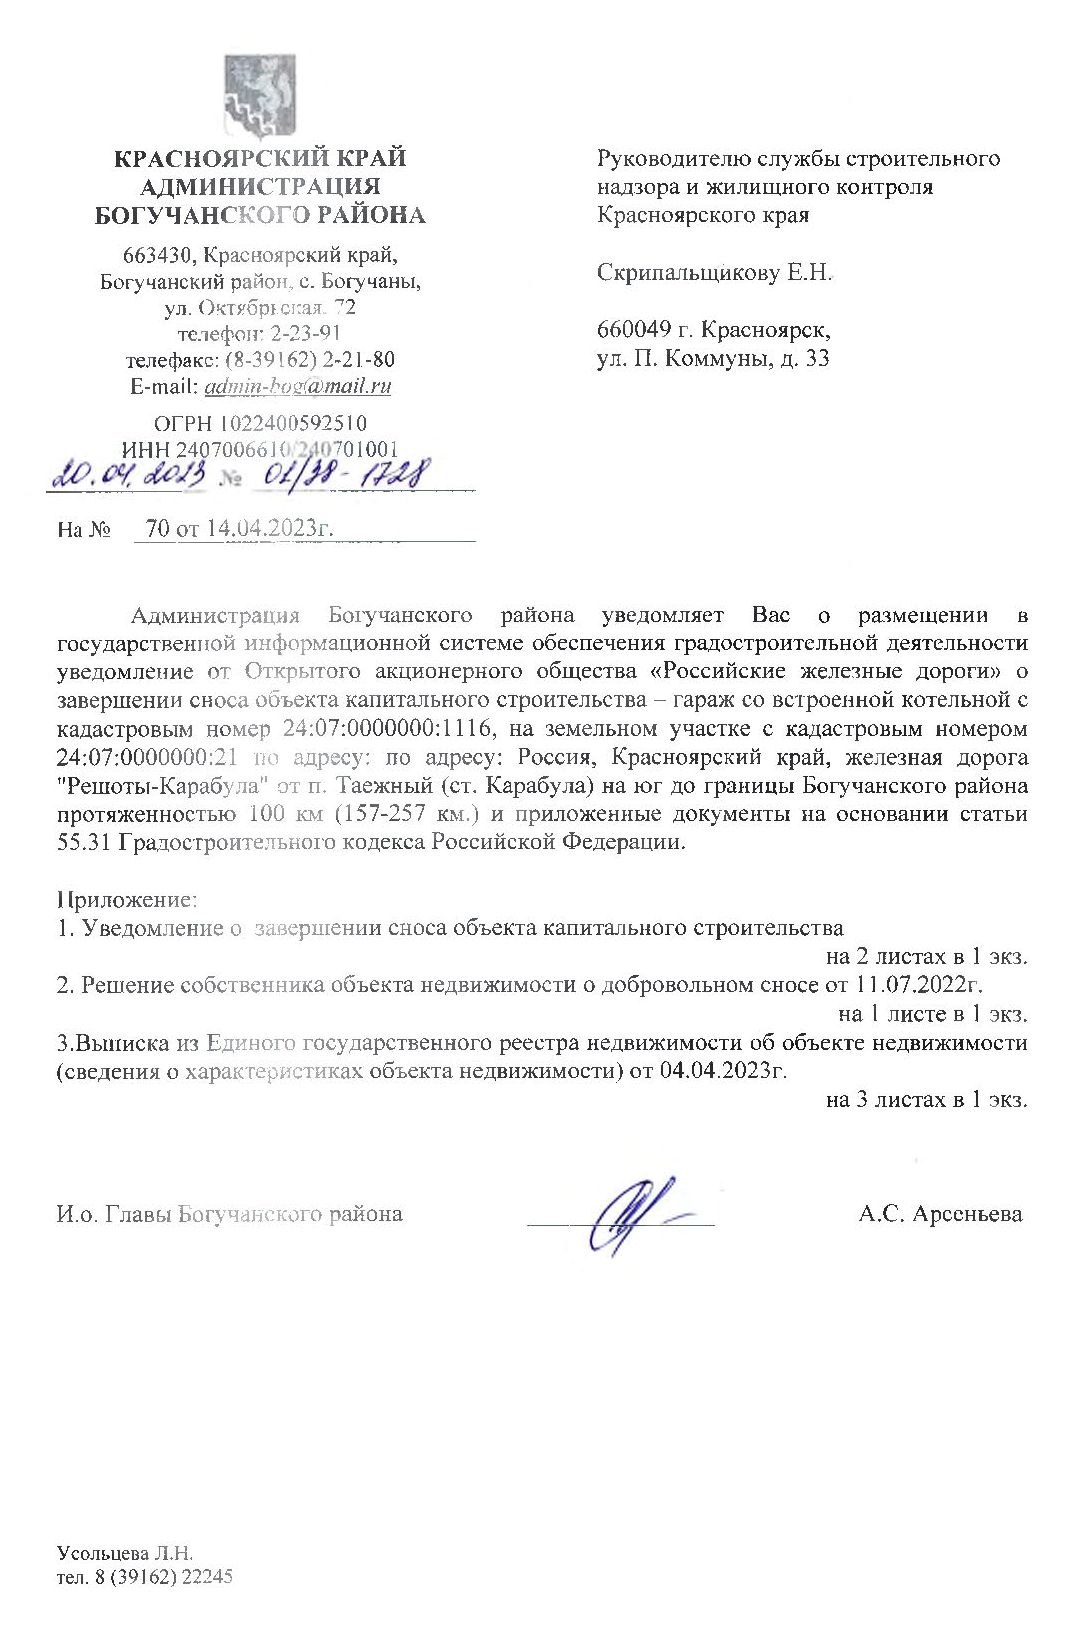 Уведомление от ОАО «Российские железные дороги» о завершении сноса объекта капитального строительства - гараж со встроенной котельной.